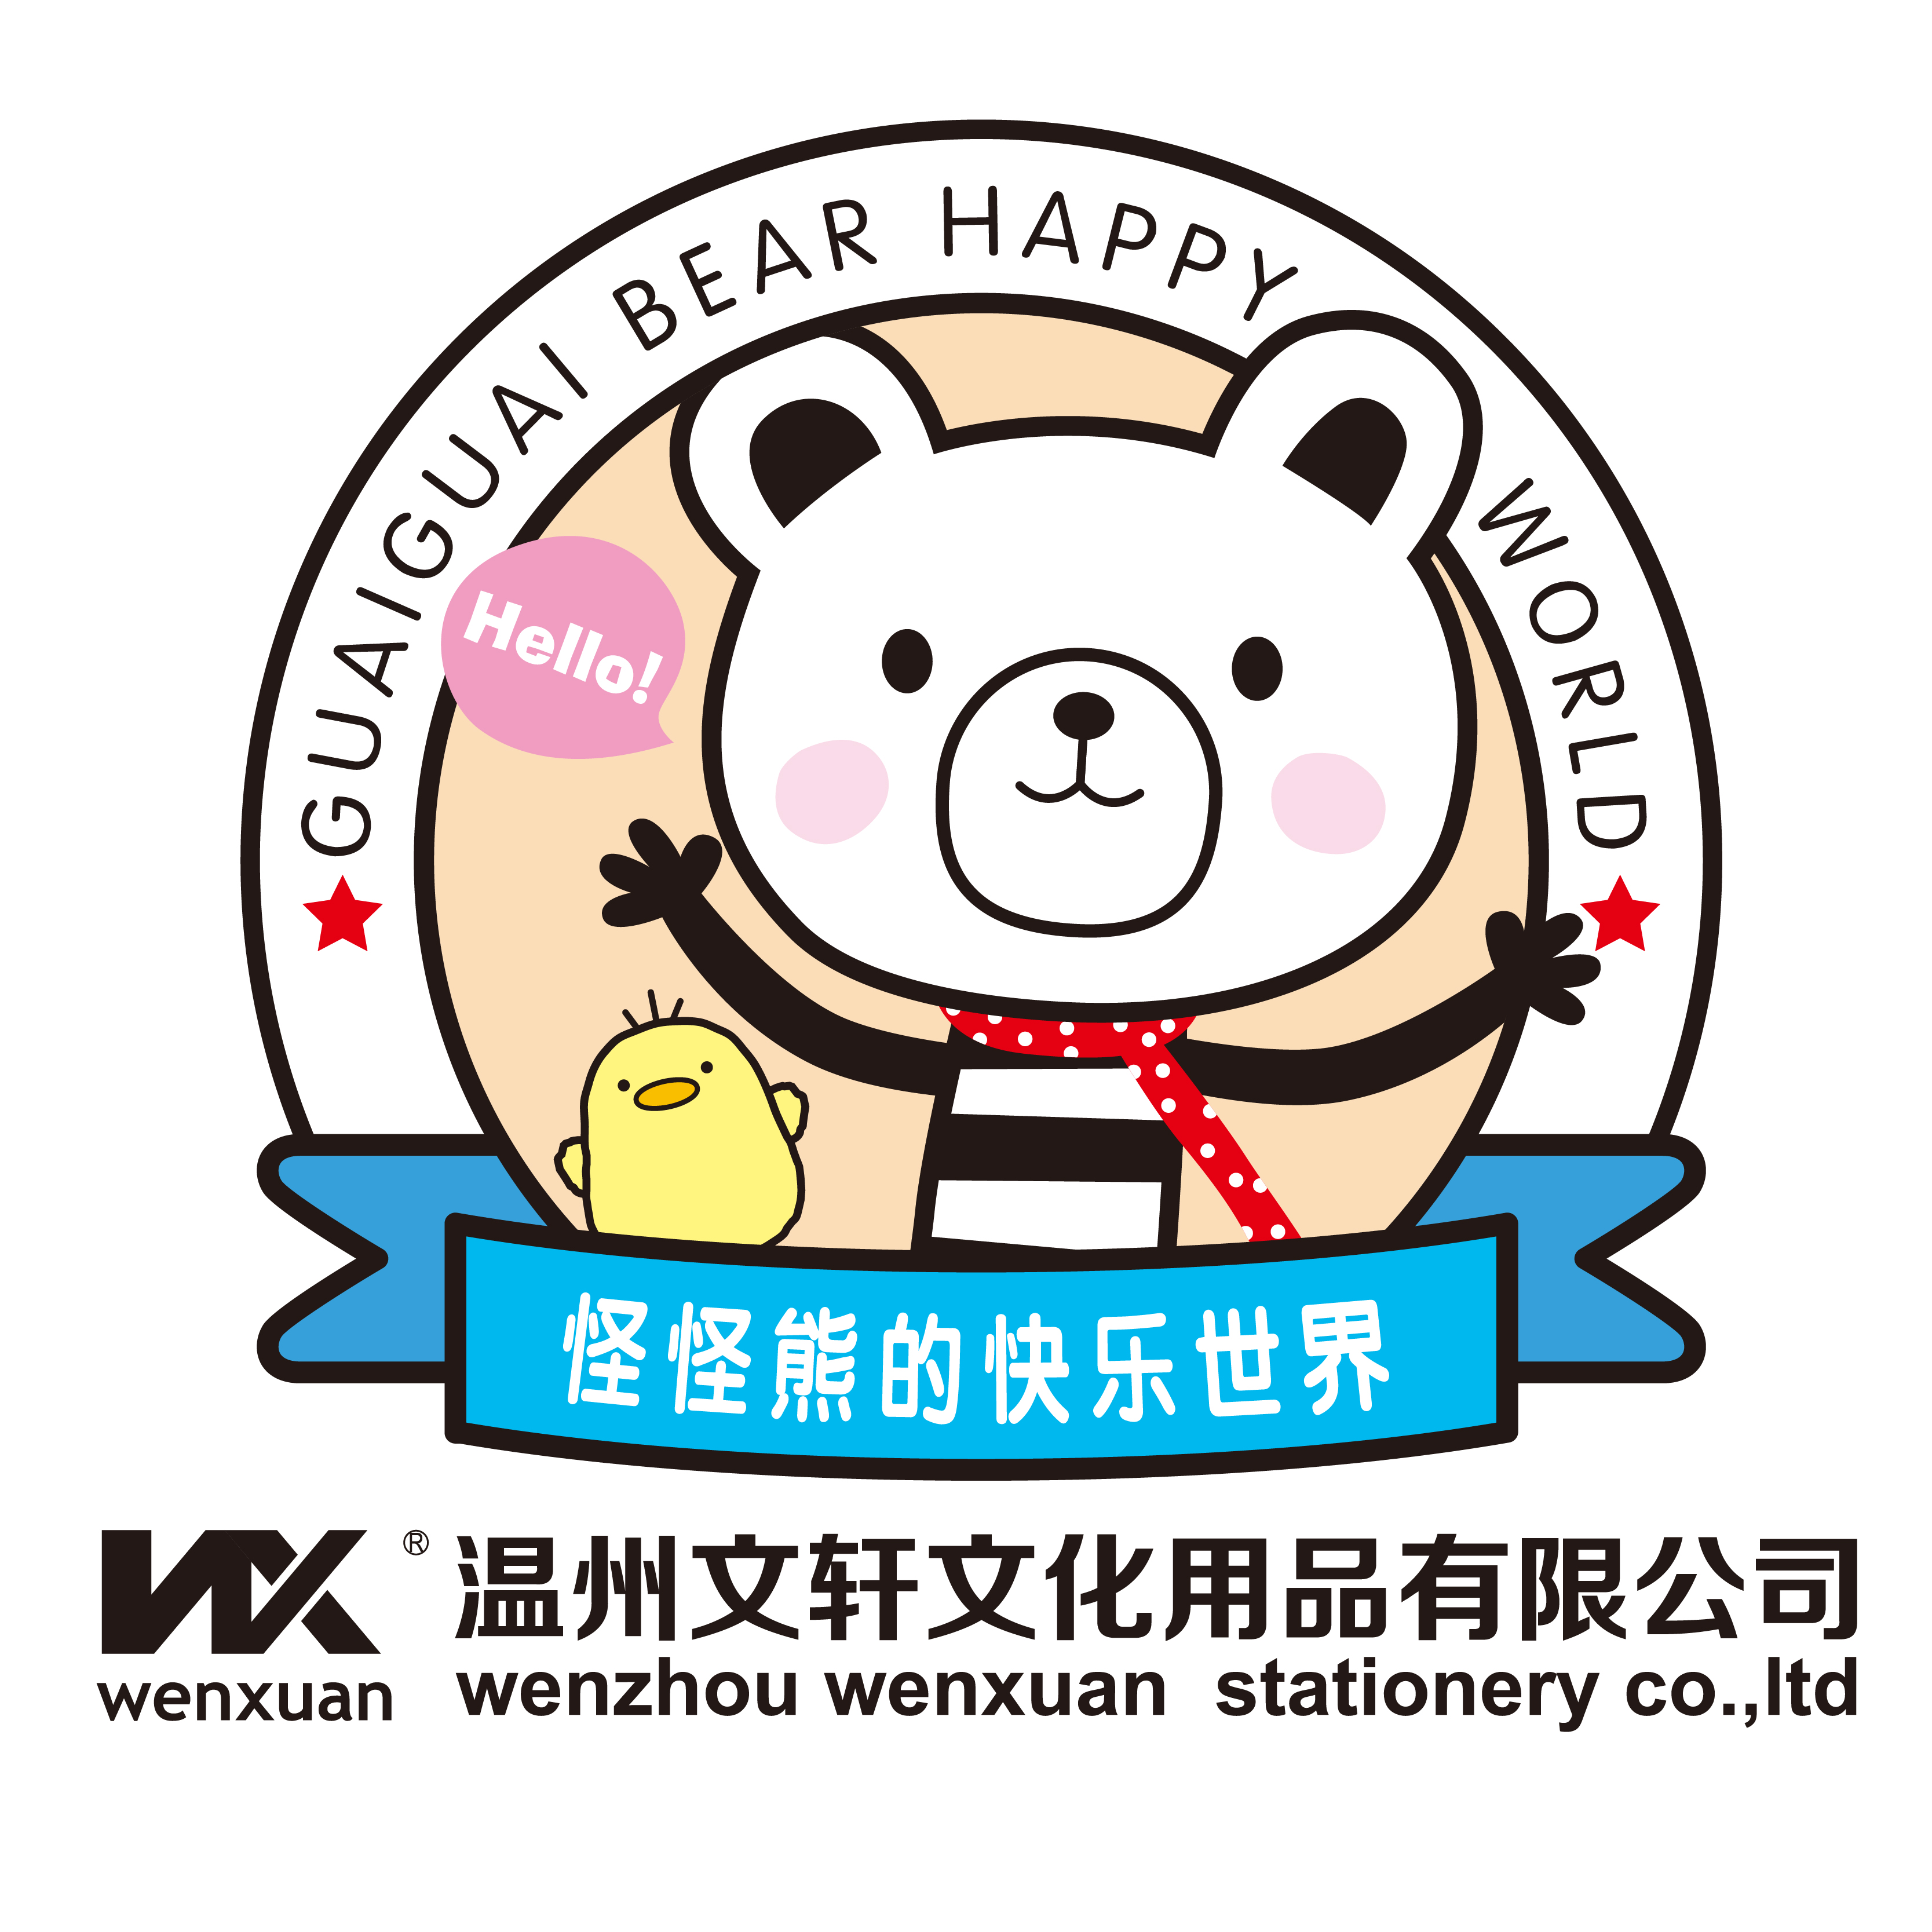 Wenzhou Wenxuan Stationery co.,ltd